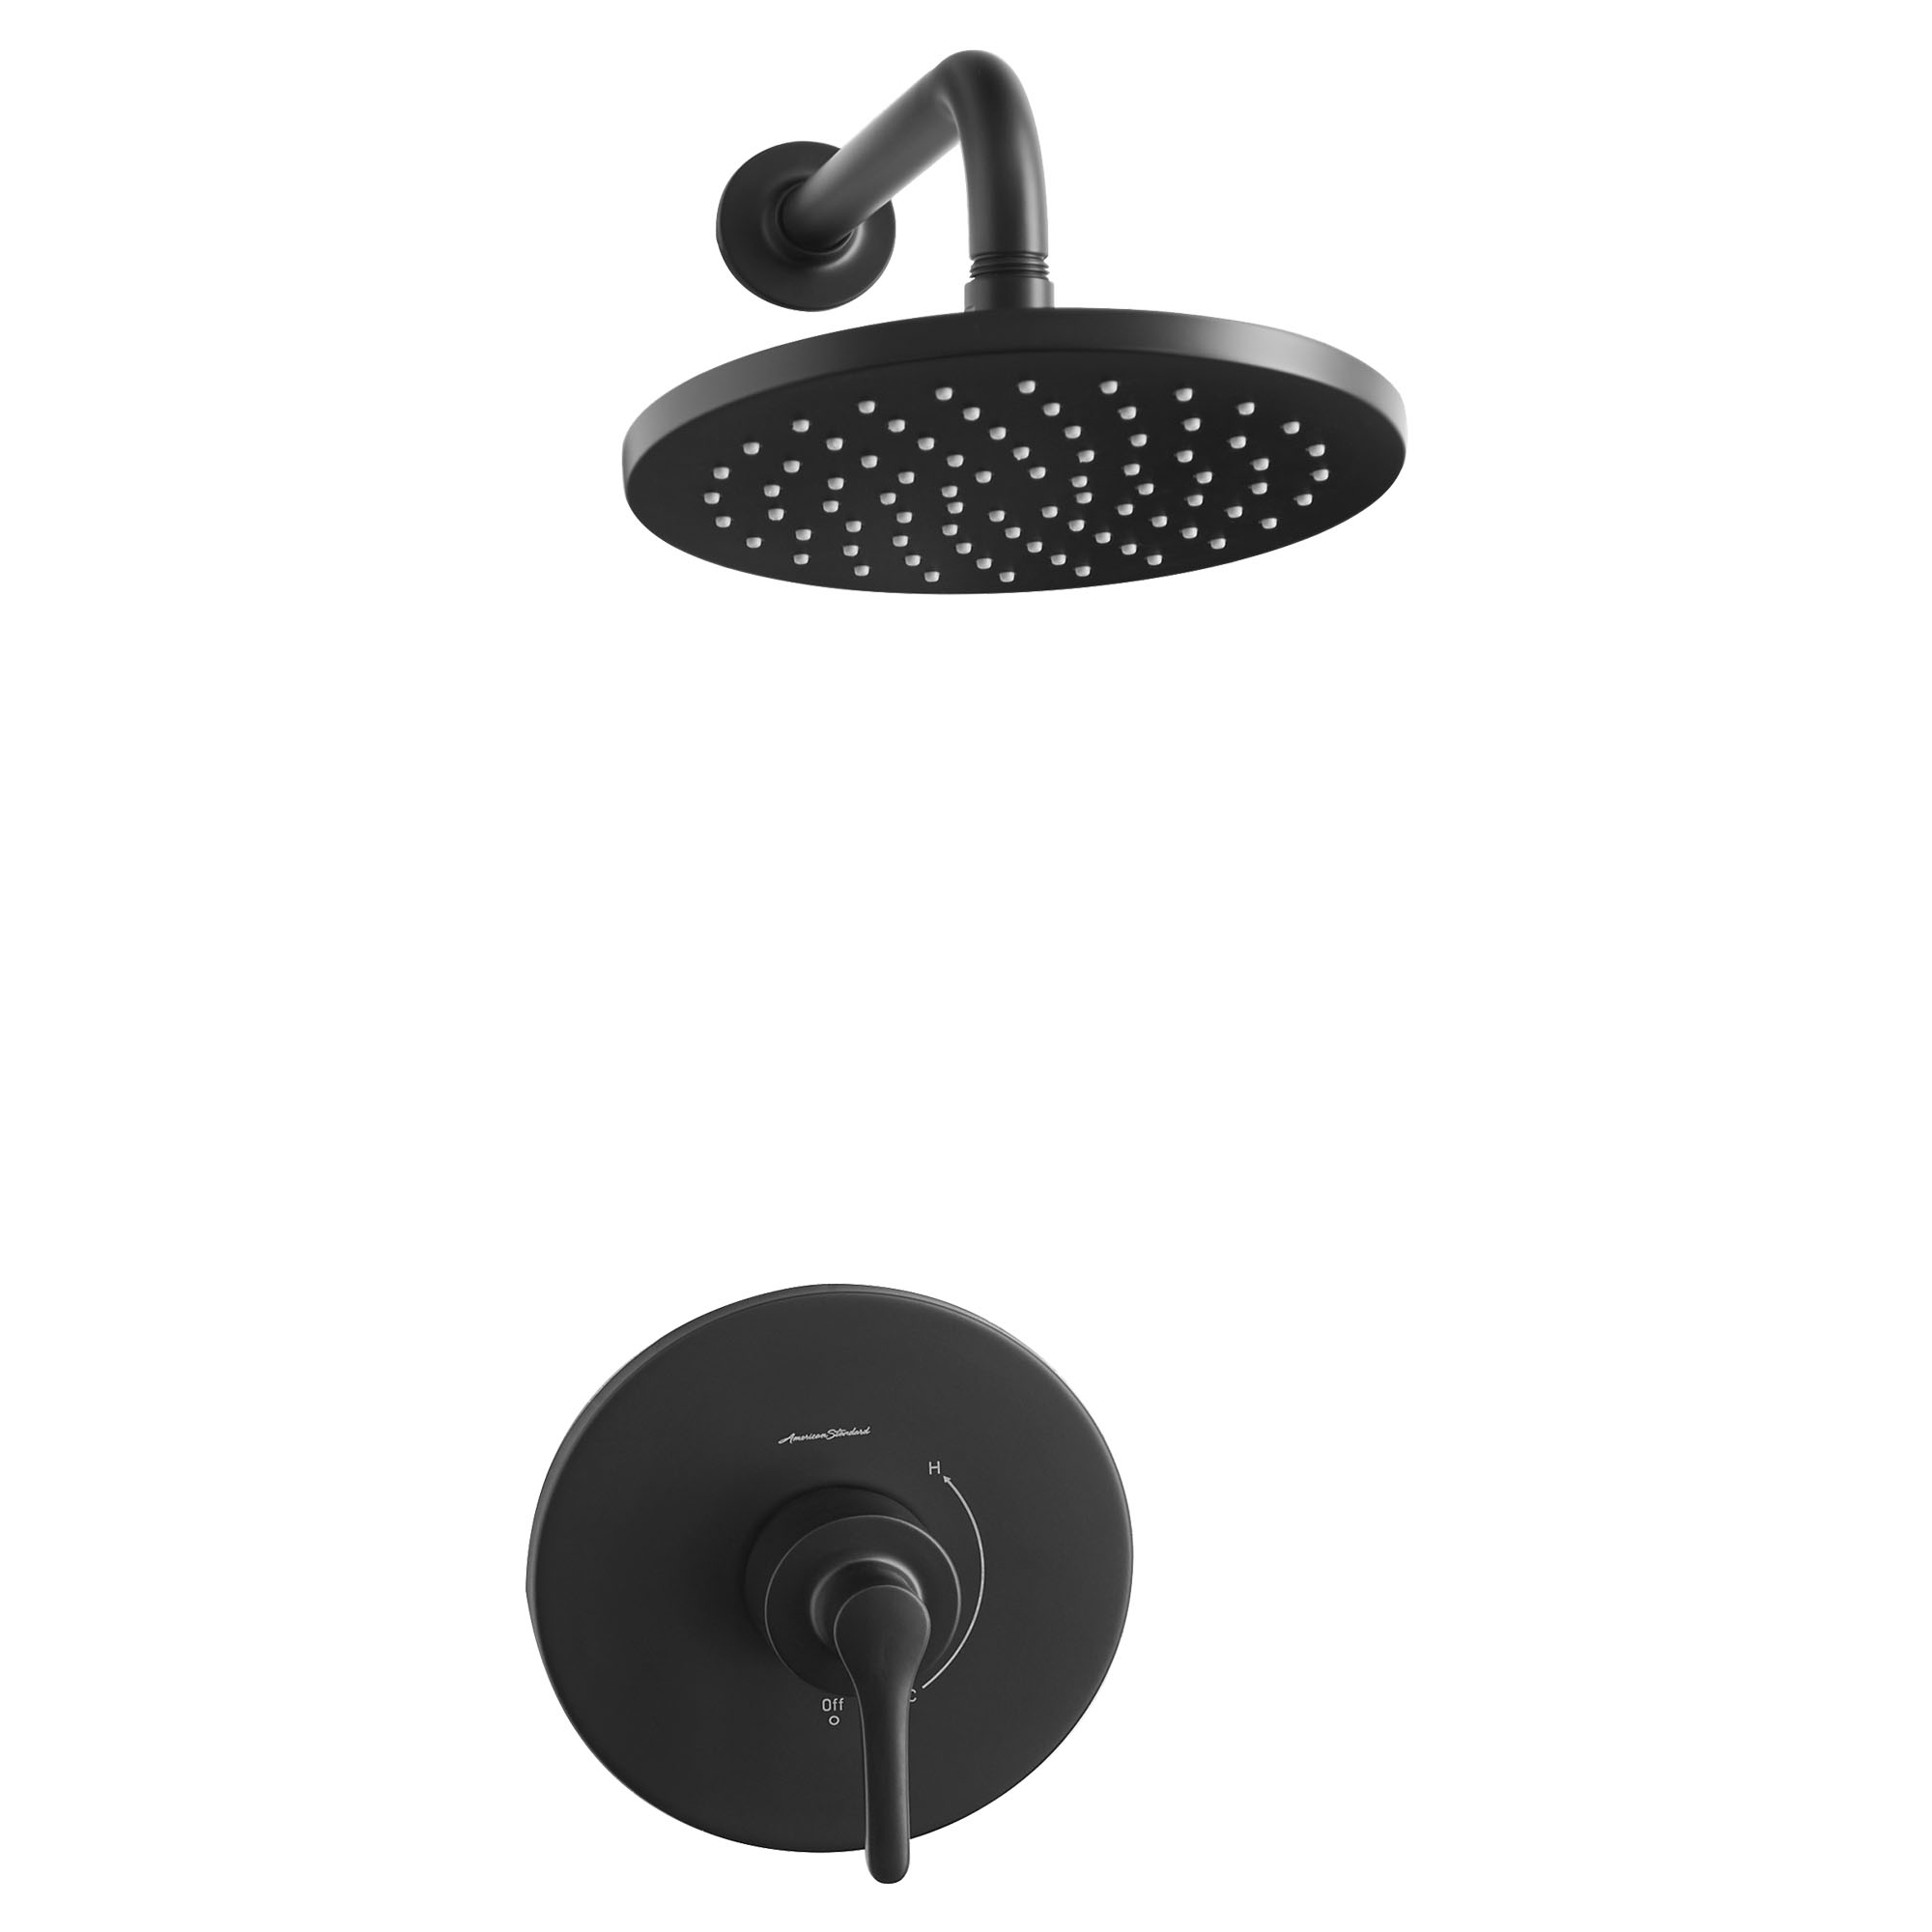 StudioMC S - Ensemble de robinetterie pour douche 1,8 gpm/6,8 L/min incluant une pomme de douche pluie, une cartouche à pression équilibrée en double céramique et une poignée à levier